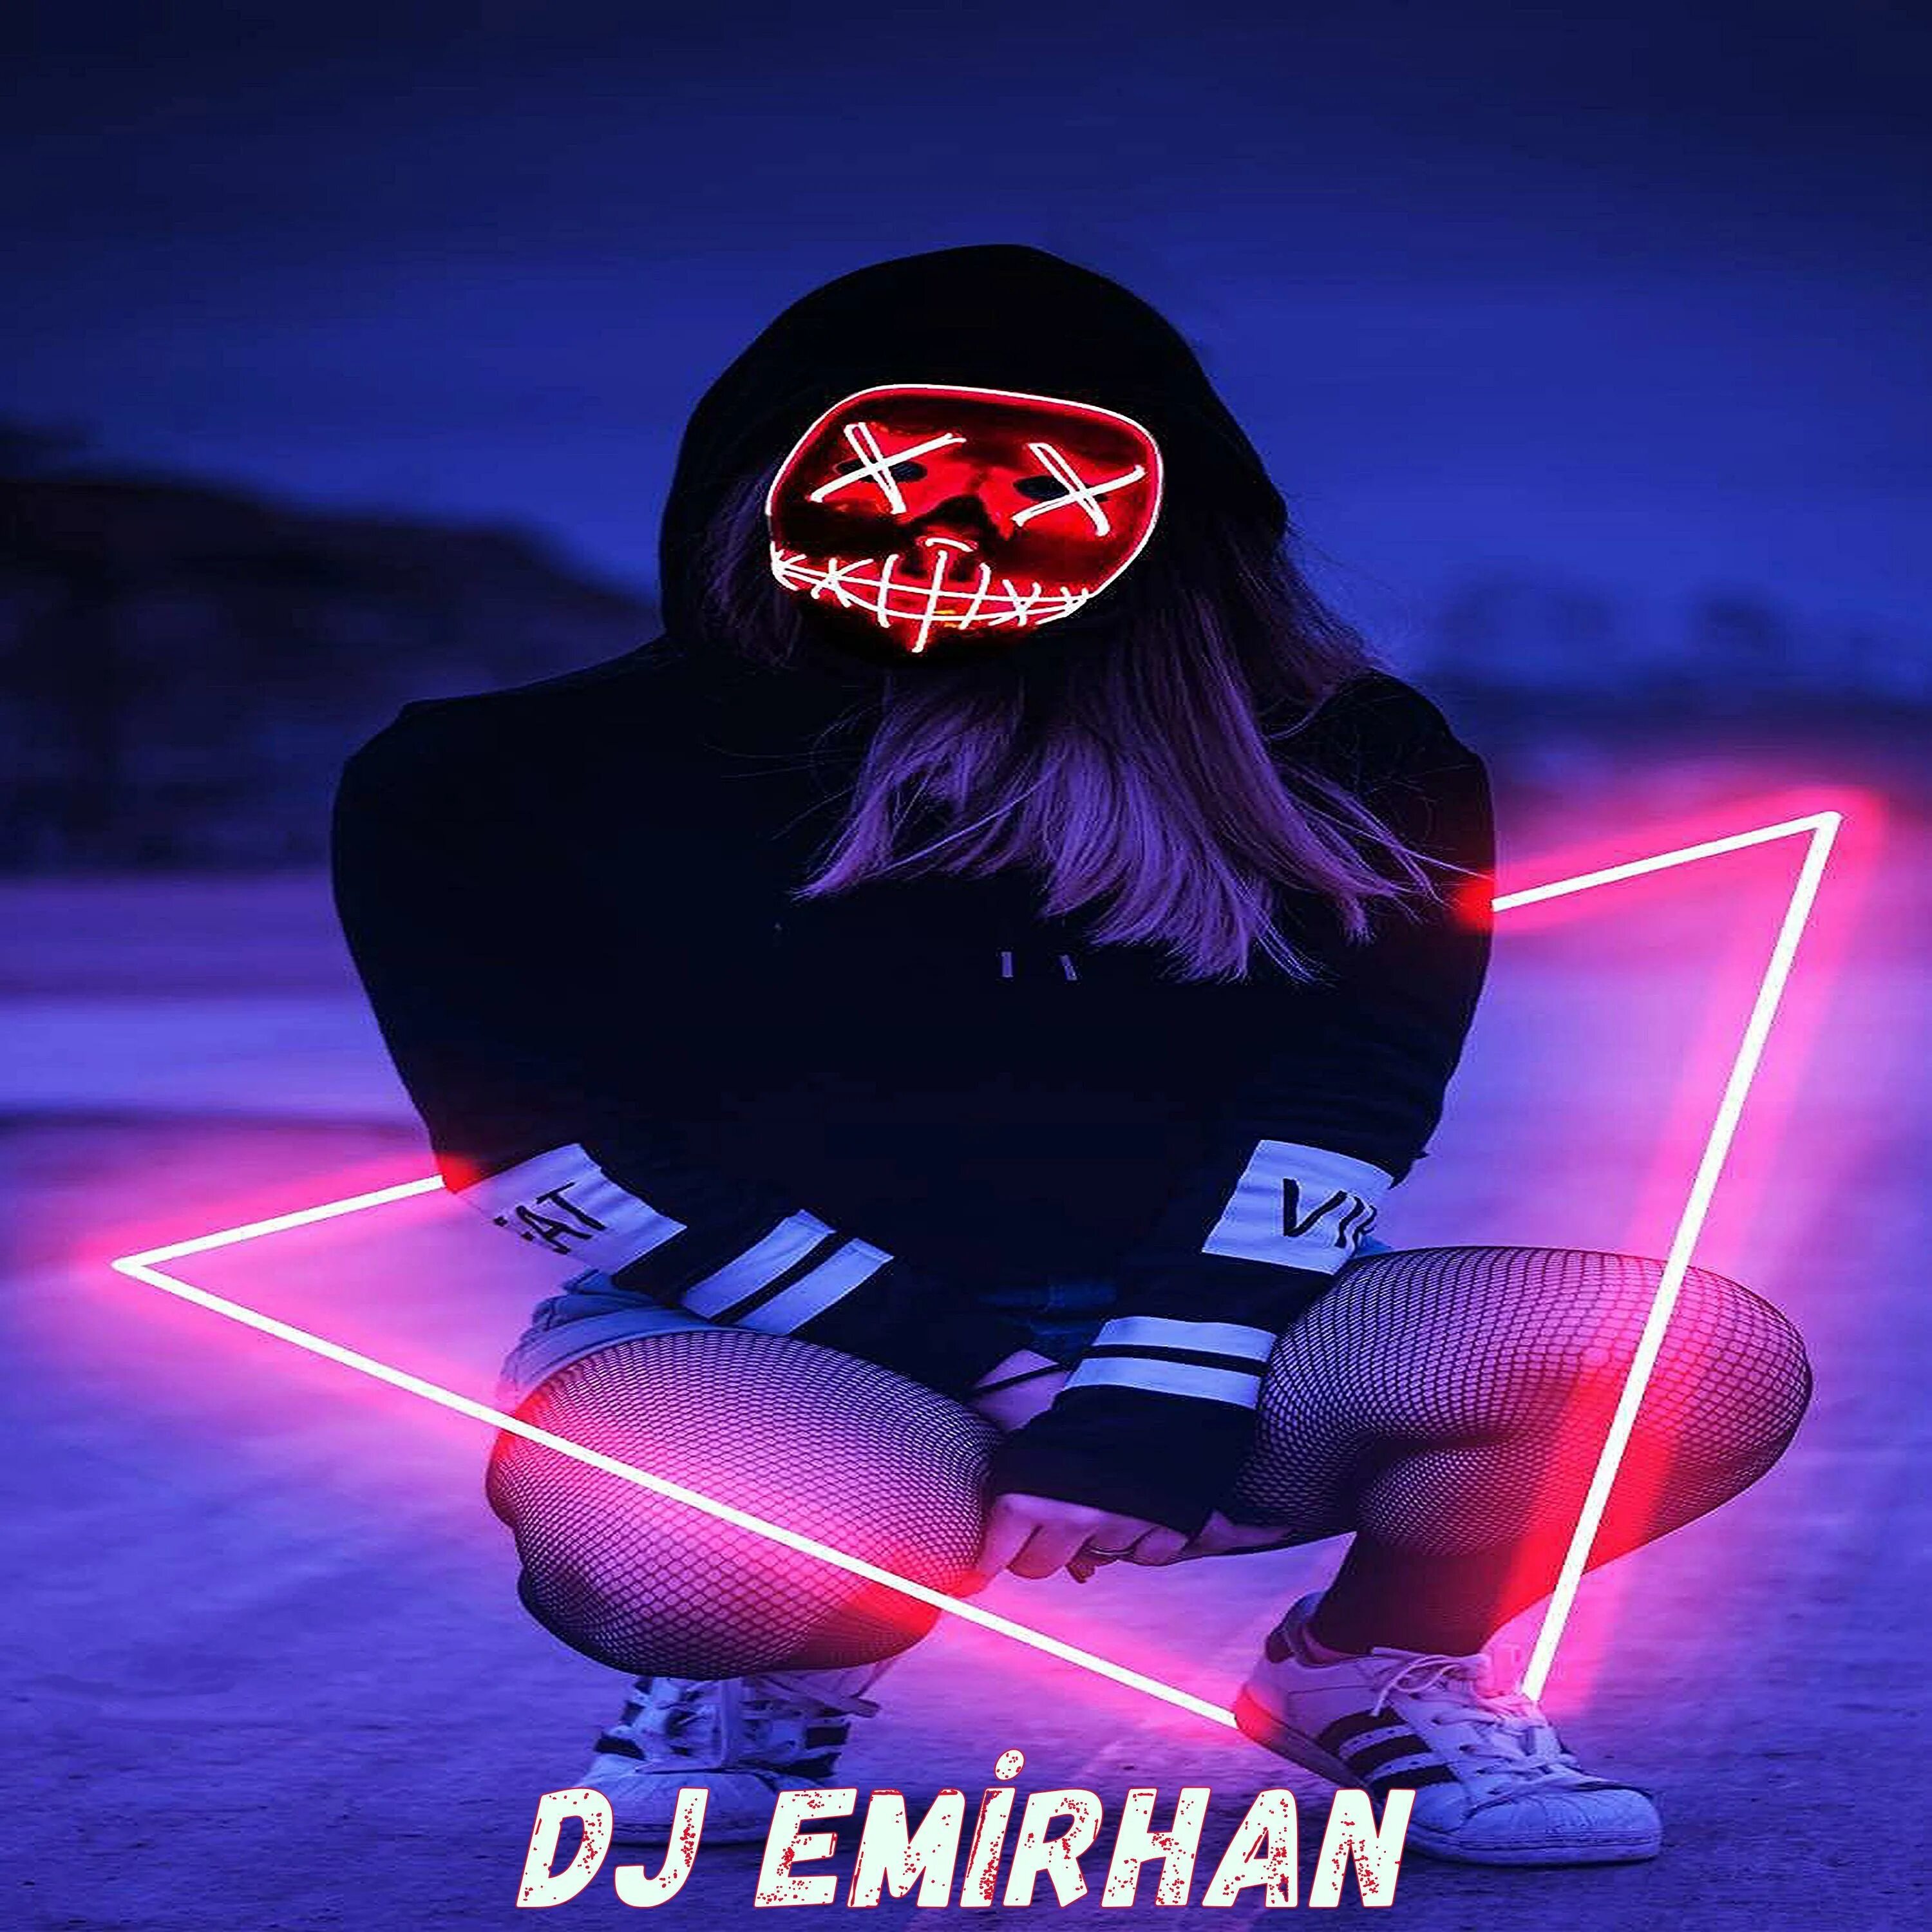 Песня not afraid dj emirhan. Нот Афраид Дж Эмирхан. DJ Emirhan not. Not afraid DJ Emirhan mp3. DJ Emirhan not afraid Club Mix.